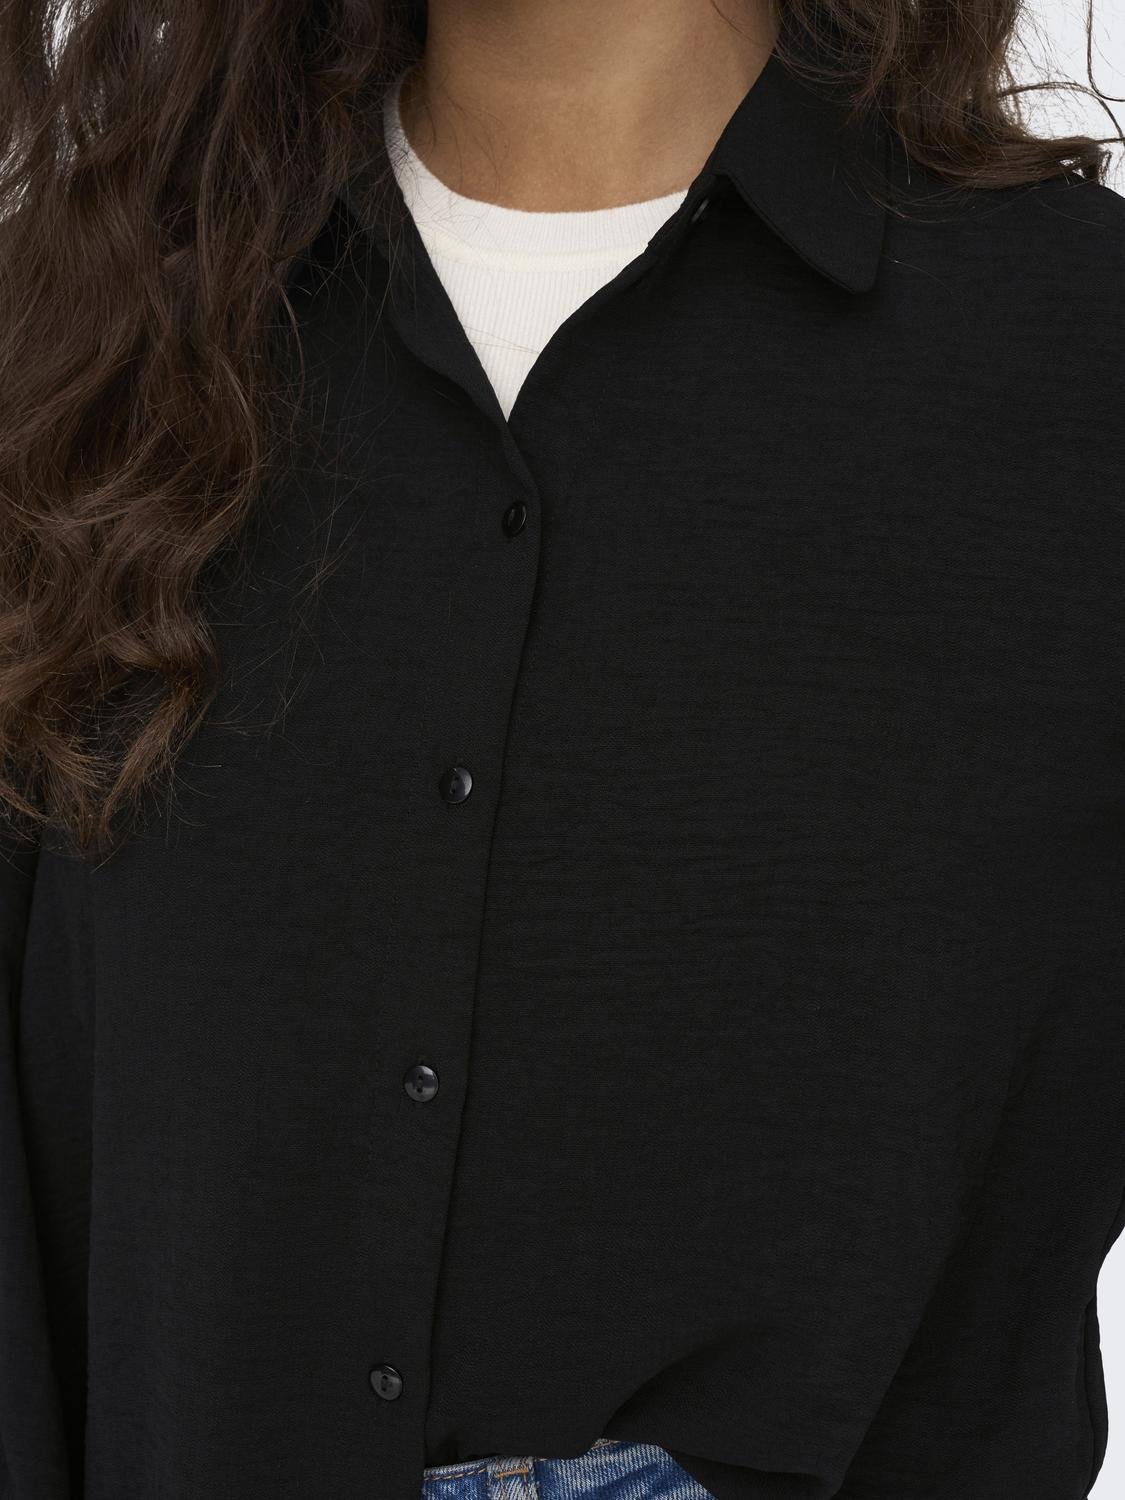 ONLY Camisas Corte regular Cuello de camisa Puños abotonados Mangas voluminosas -Black - 15283183